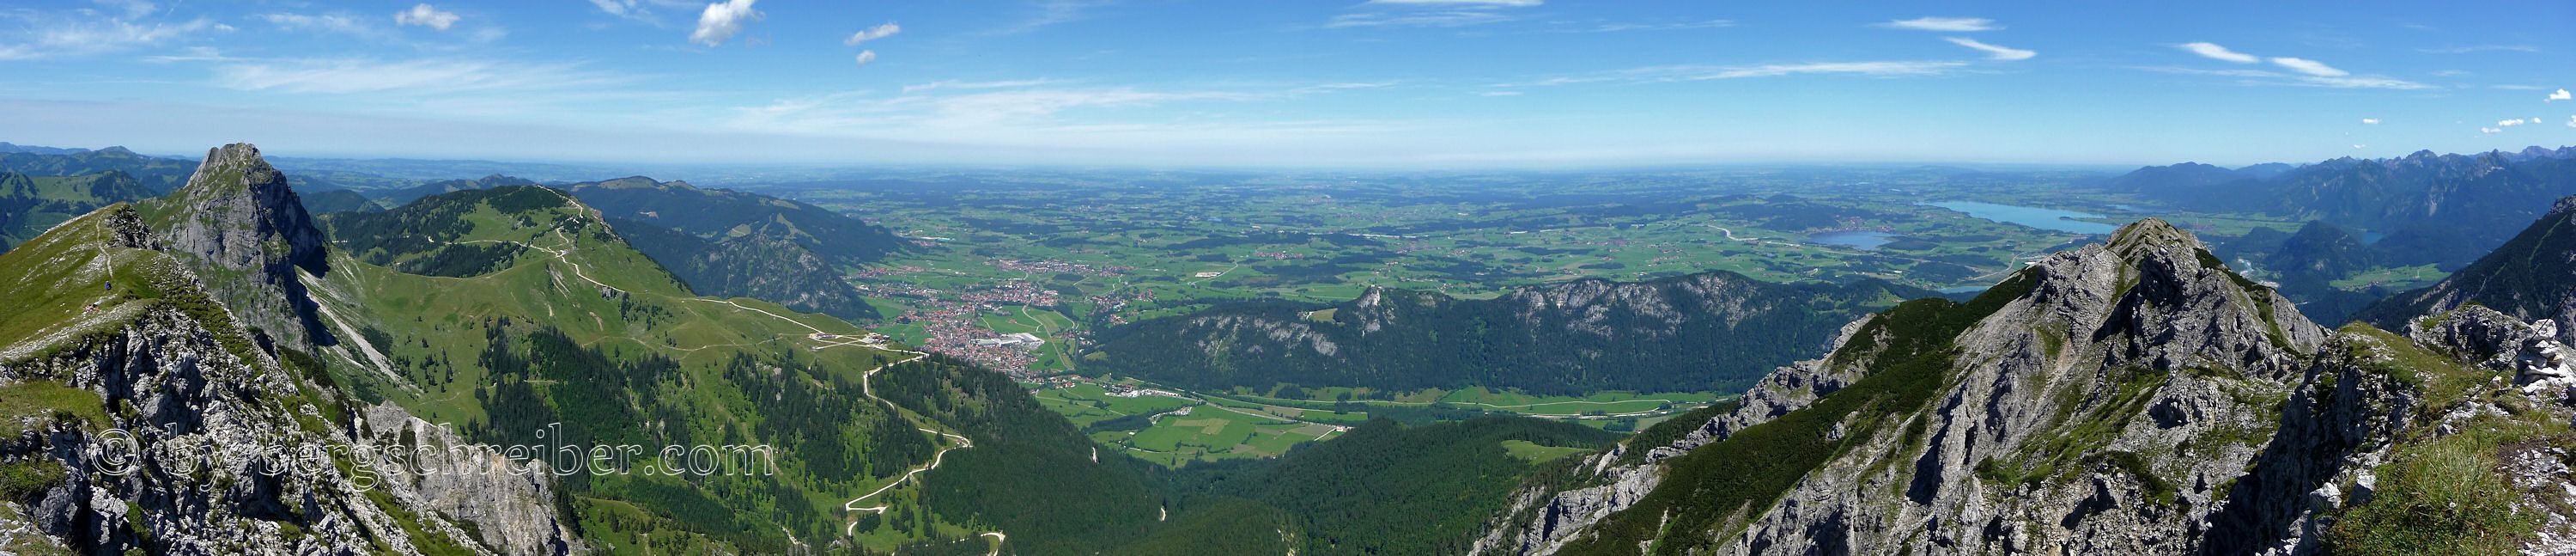 Panorama des Alpenvorlands vom Brentenjoch - Blick über Breitenberg, Pfronten, Zirmgrat bis zum Forggensee und den Ammergauer Alpen.